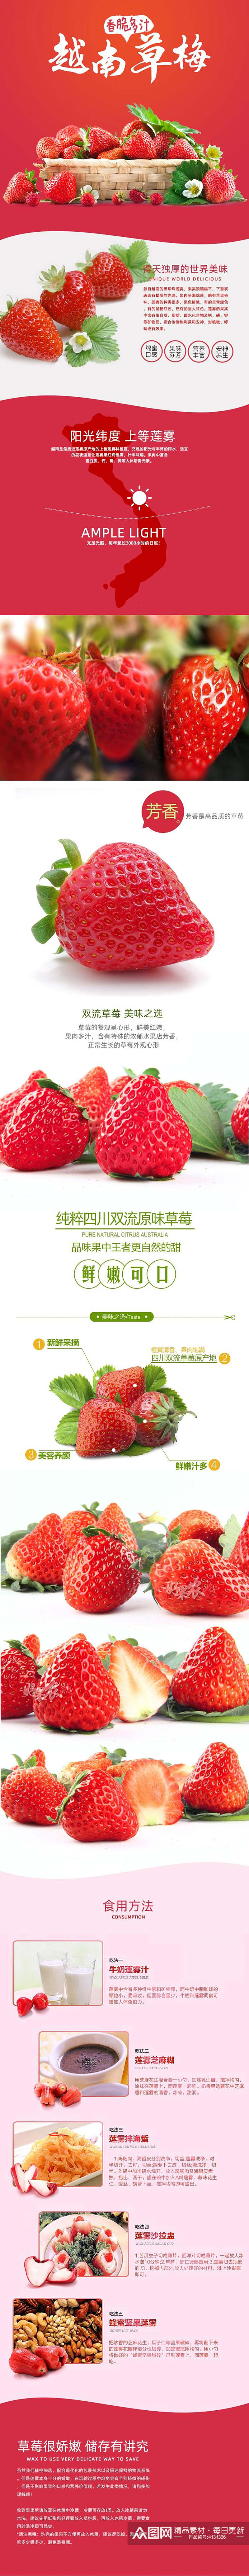 越南草莓水果详情页素材